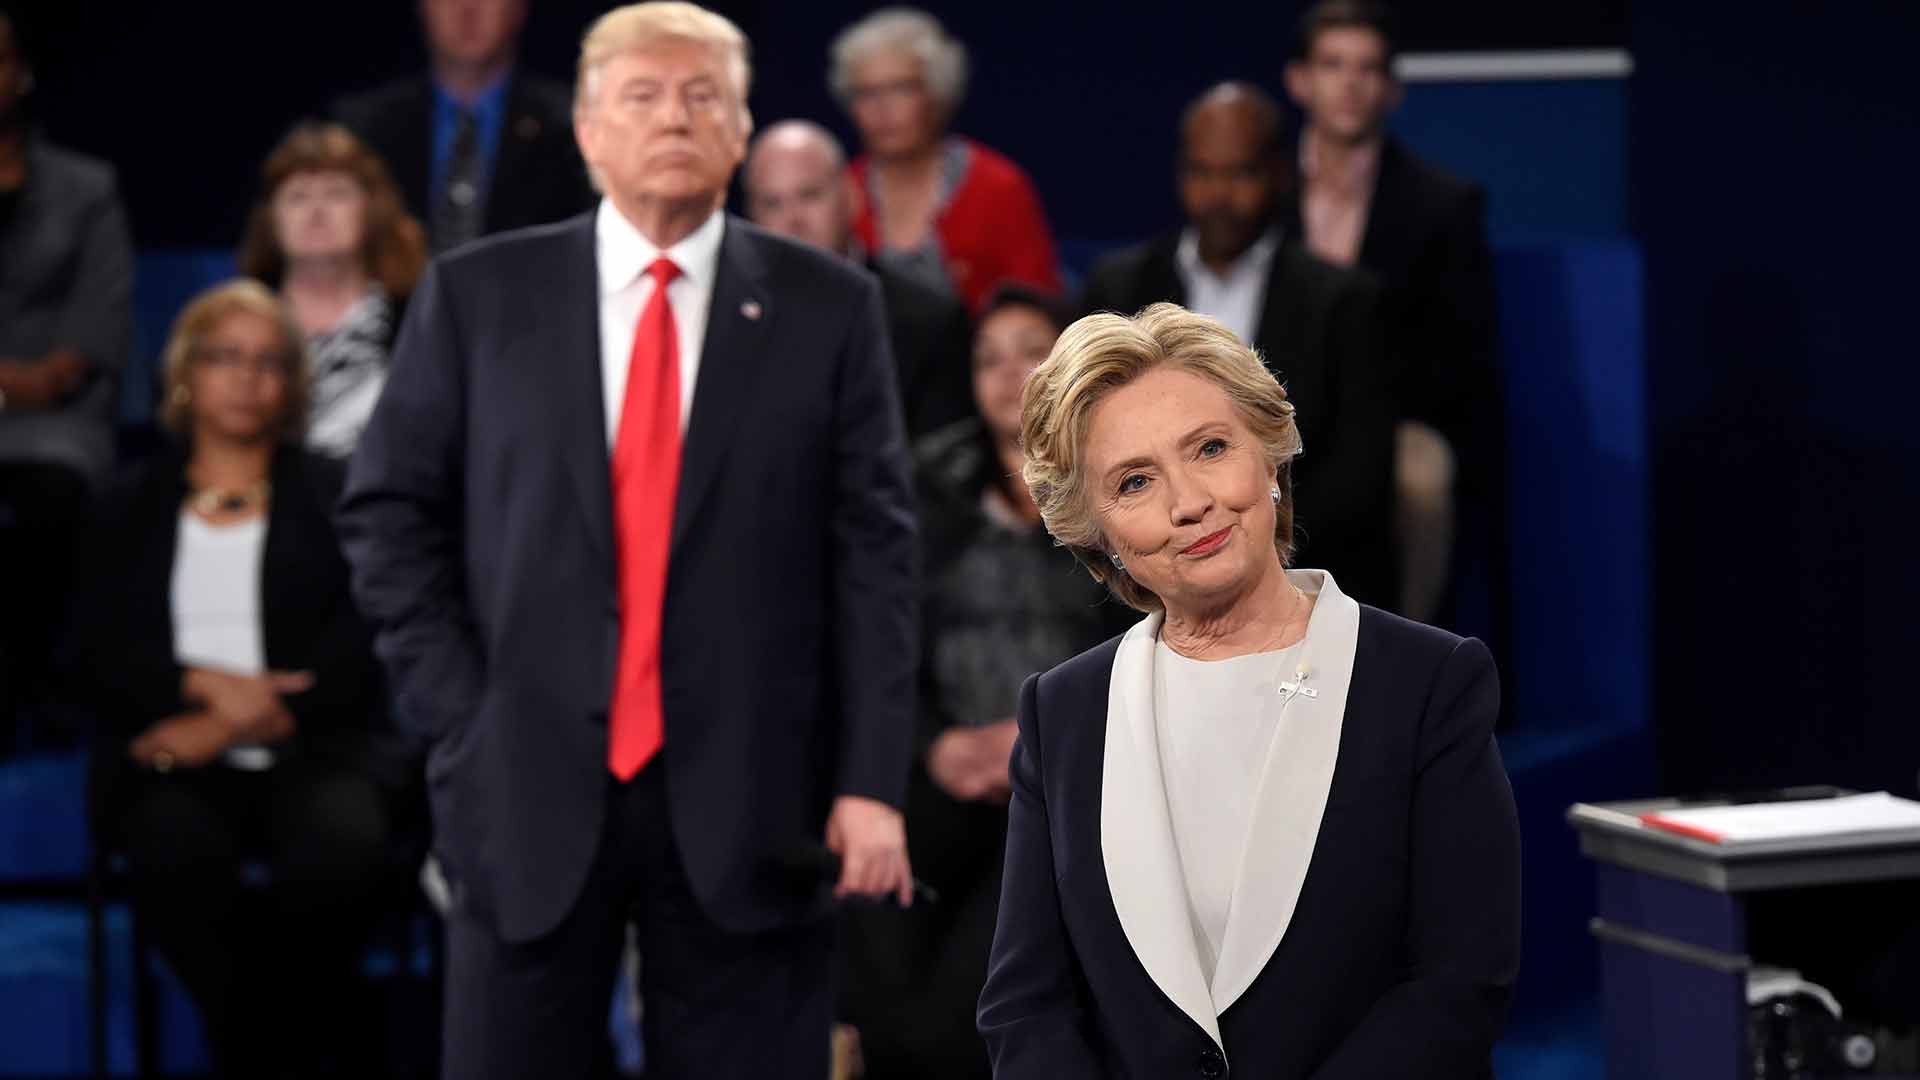 In debate, Trump signals aggressive close to his campaign